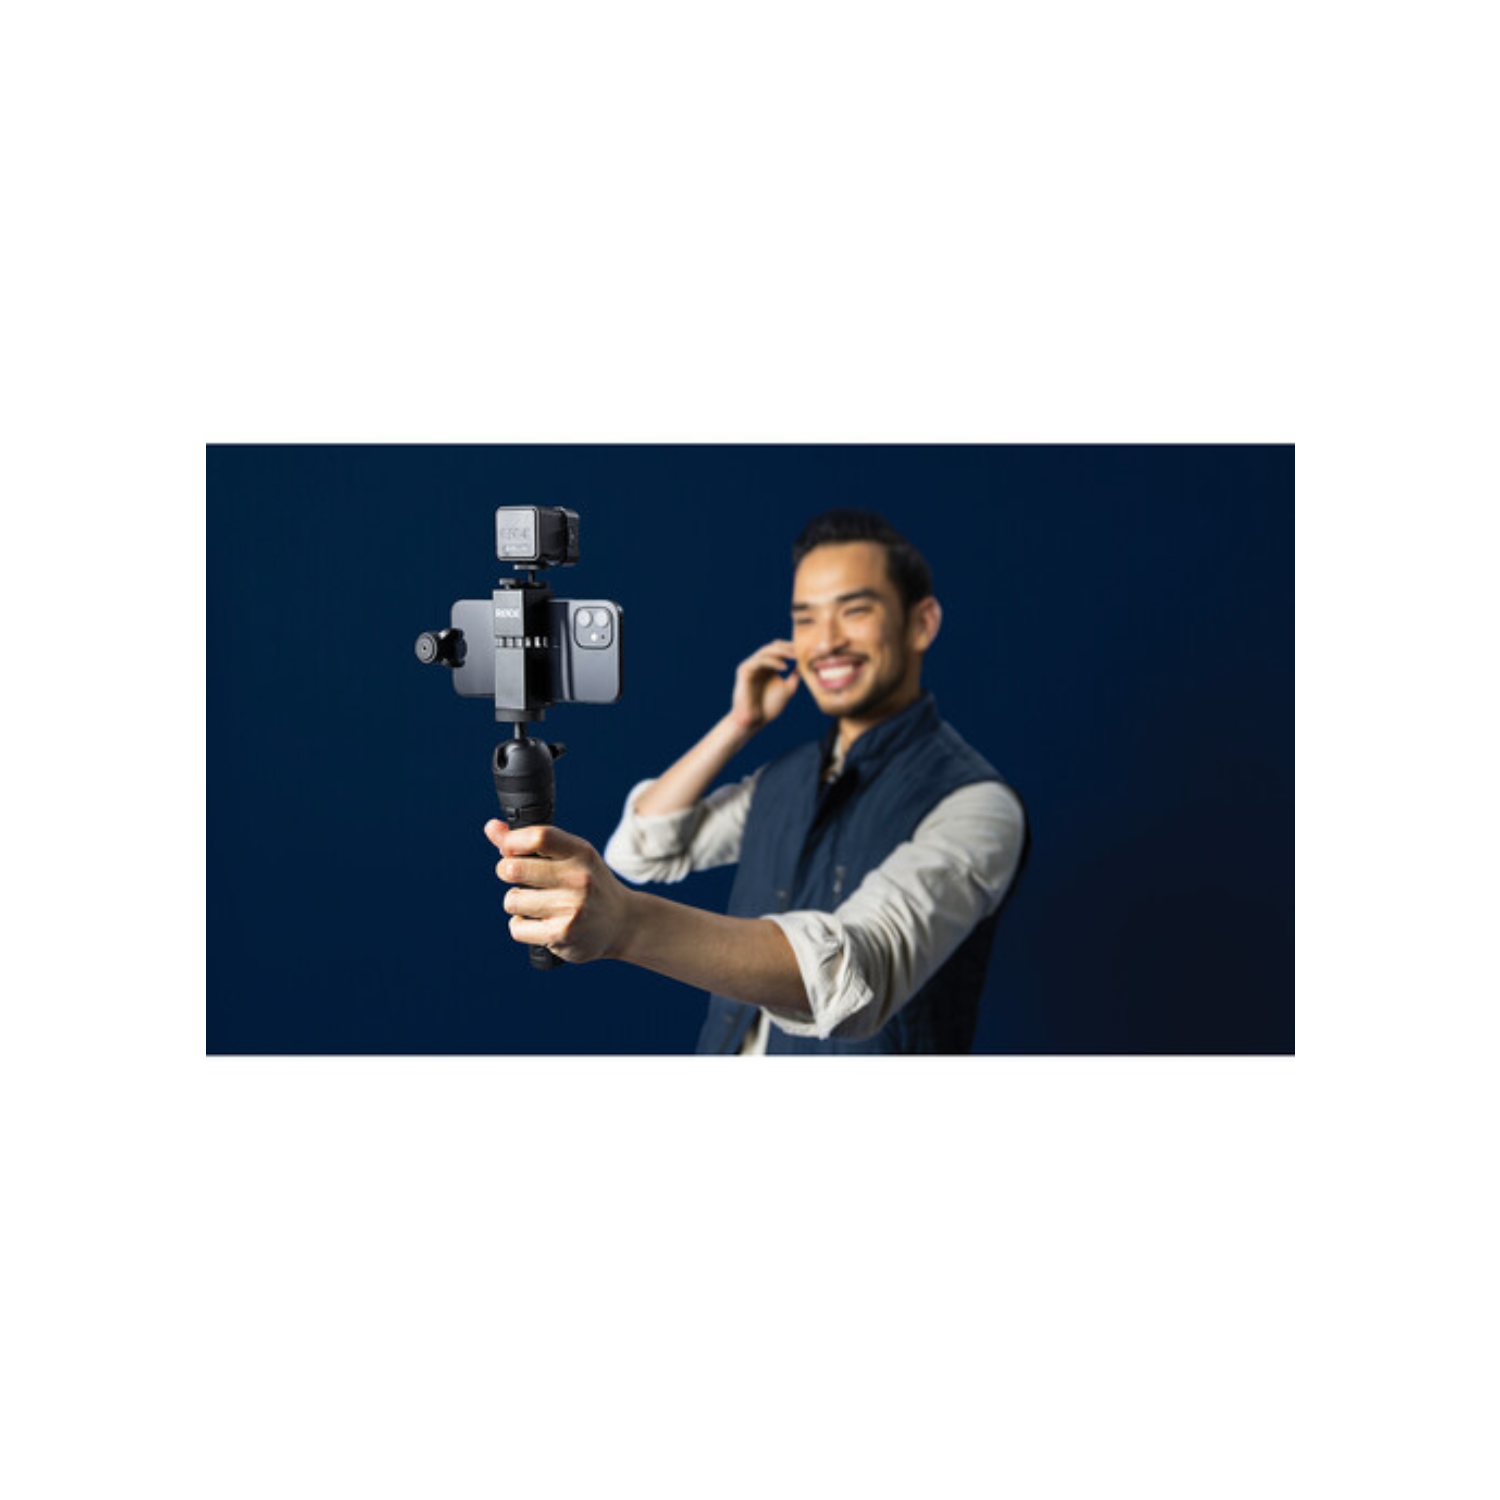 Kit Vlogger Rode - Videomic Me-L, Tripod 2, Smart Grip, LED Light & Accessories - Pour les appareils iOS